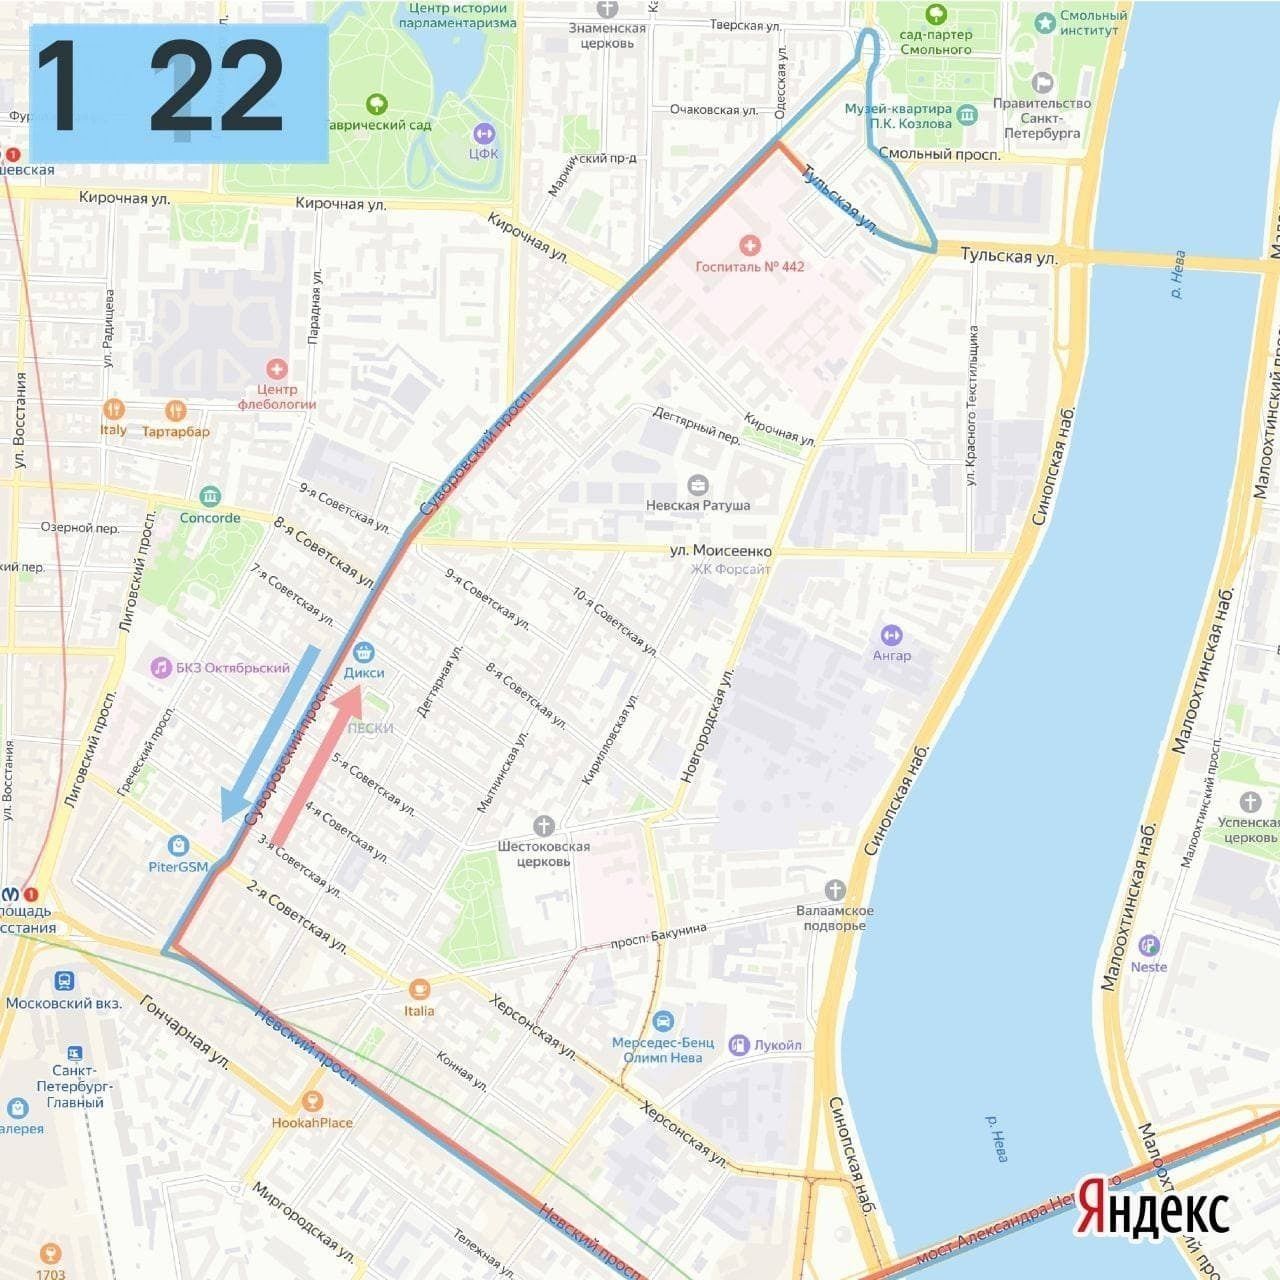 Троллейбус 4 СПБ маршрут. Маршрут 23 троллейбуса СПБ. Маршрут троллейбуса 23 Санкт-Петербург на карте. Маршрут троллейбуса 43 Санкт-Петербург на карте.